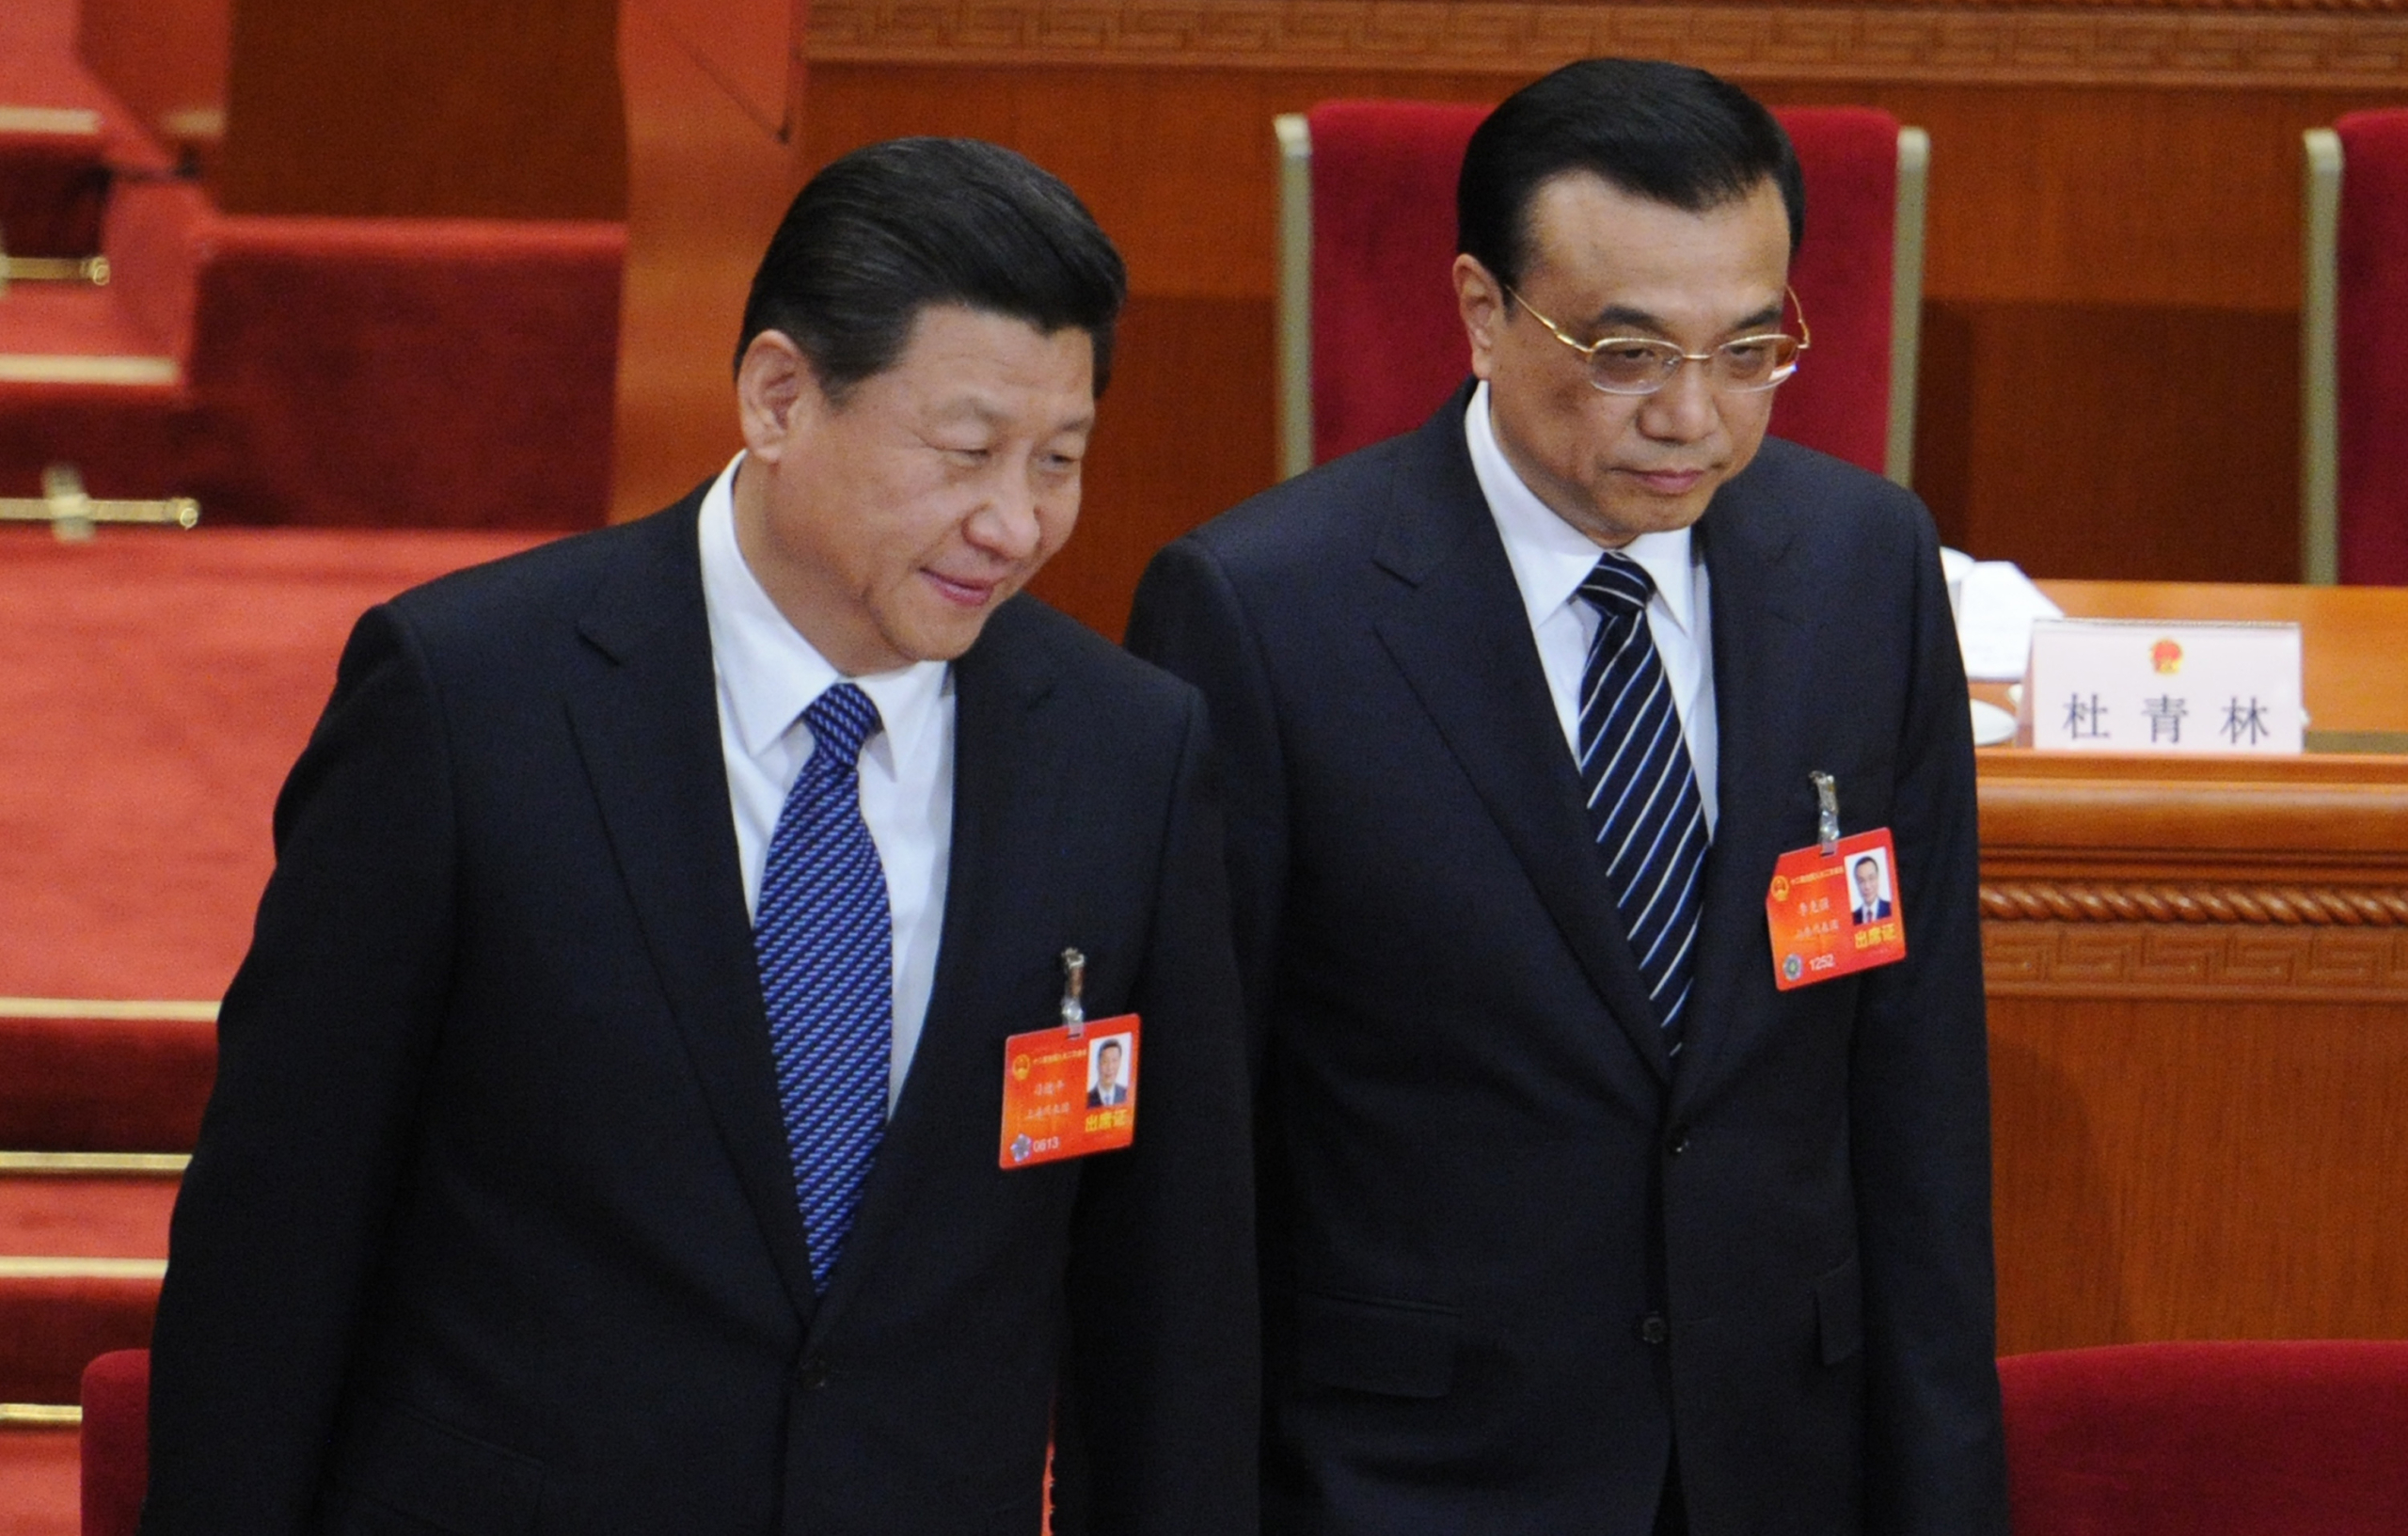 Ảnh chụp Chủ tịch Trung Quốc Tập Cận Bình (trái) và Thủ tướng Lý Khắc Cường (phải) tại kỳ họp Lưỡng hội của ĐCSTQ năm 2014. (Ảnh: WANG ZHAO/AFP/Getty Images)